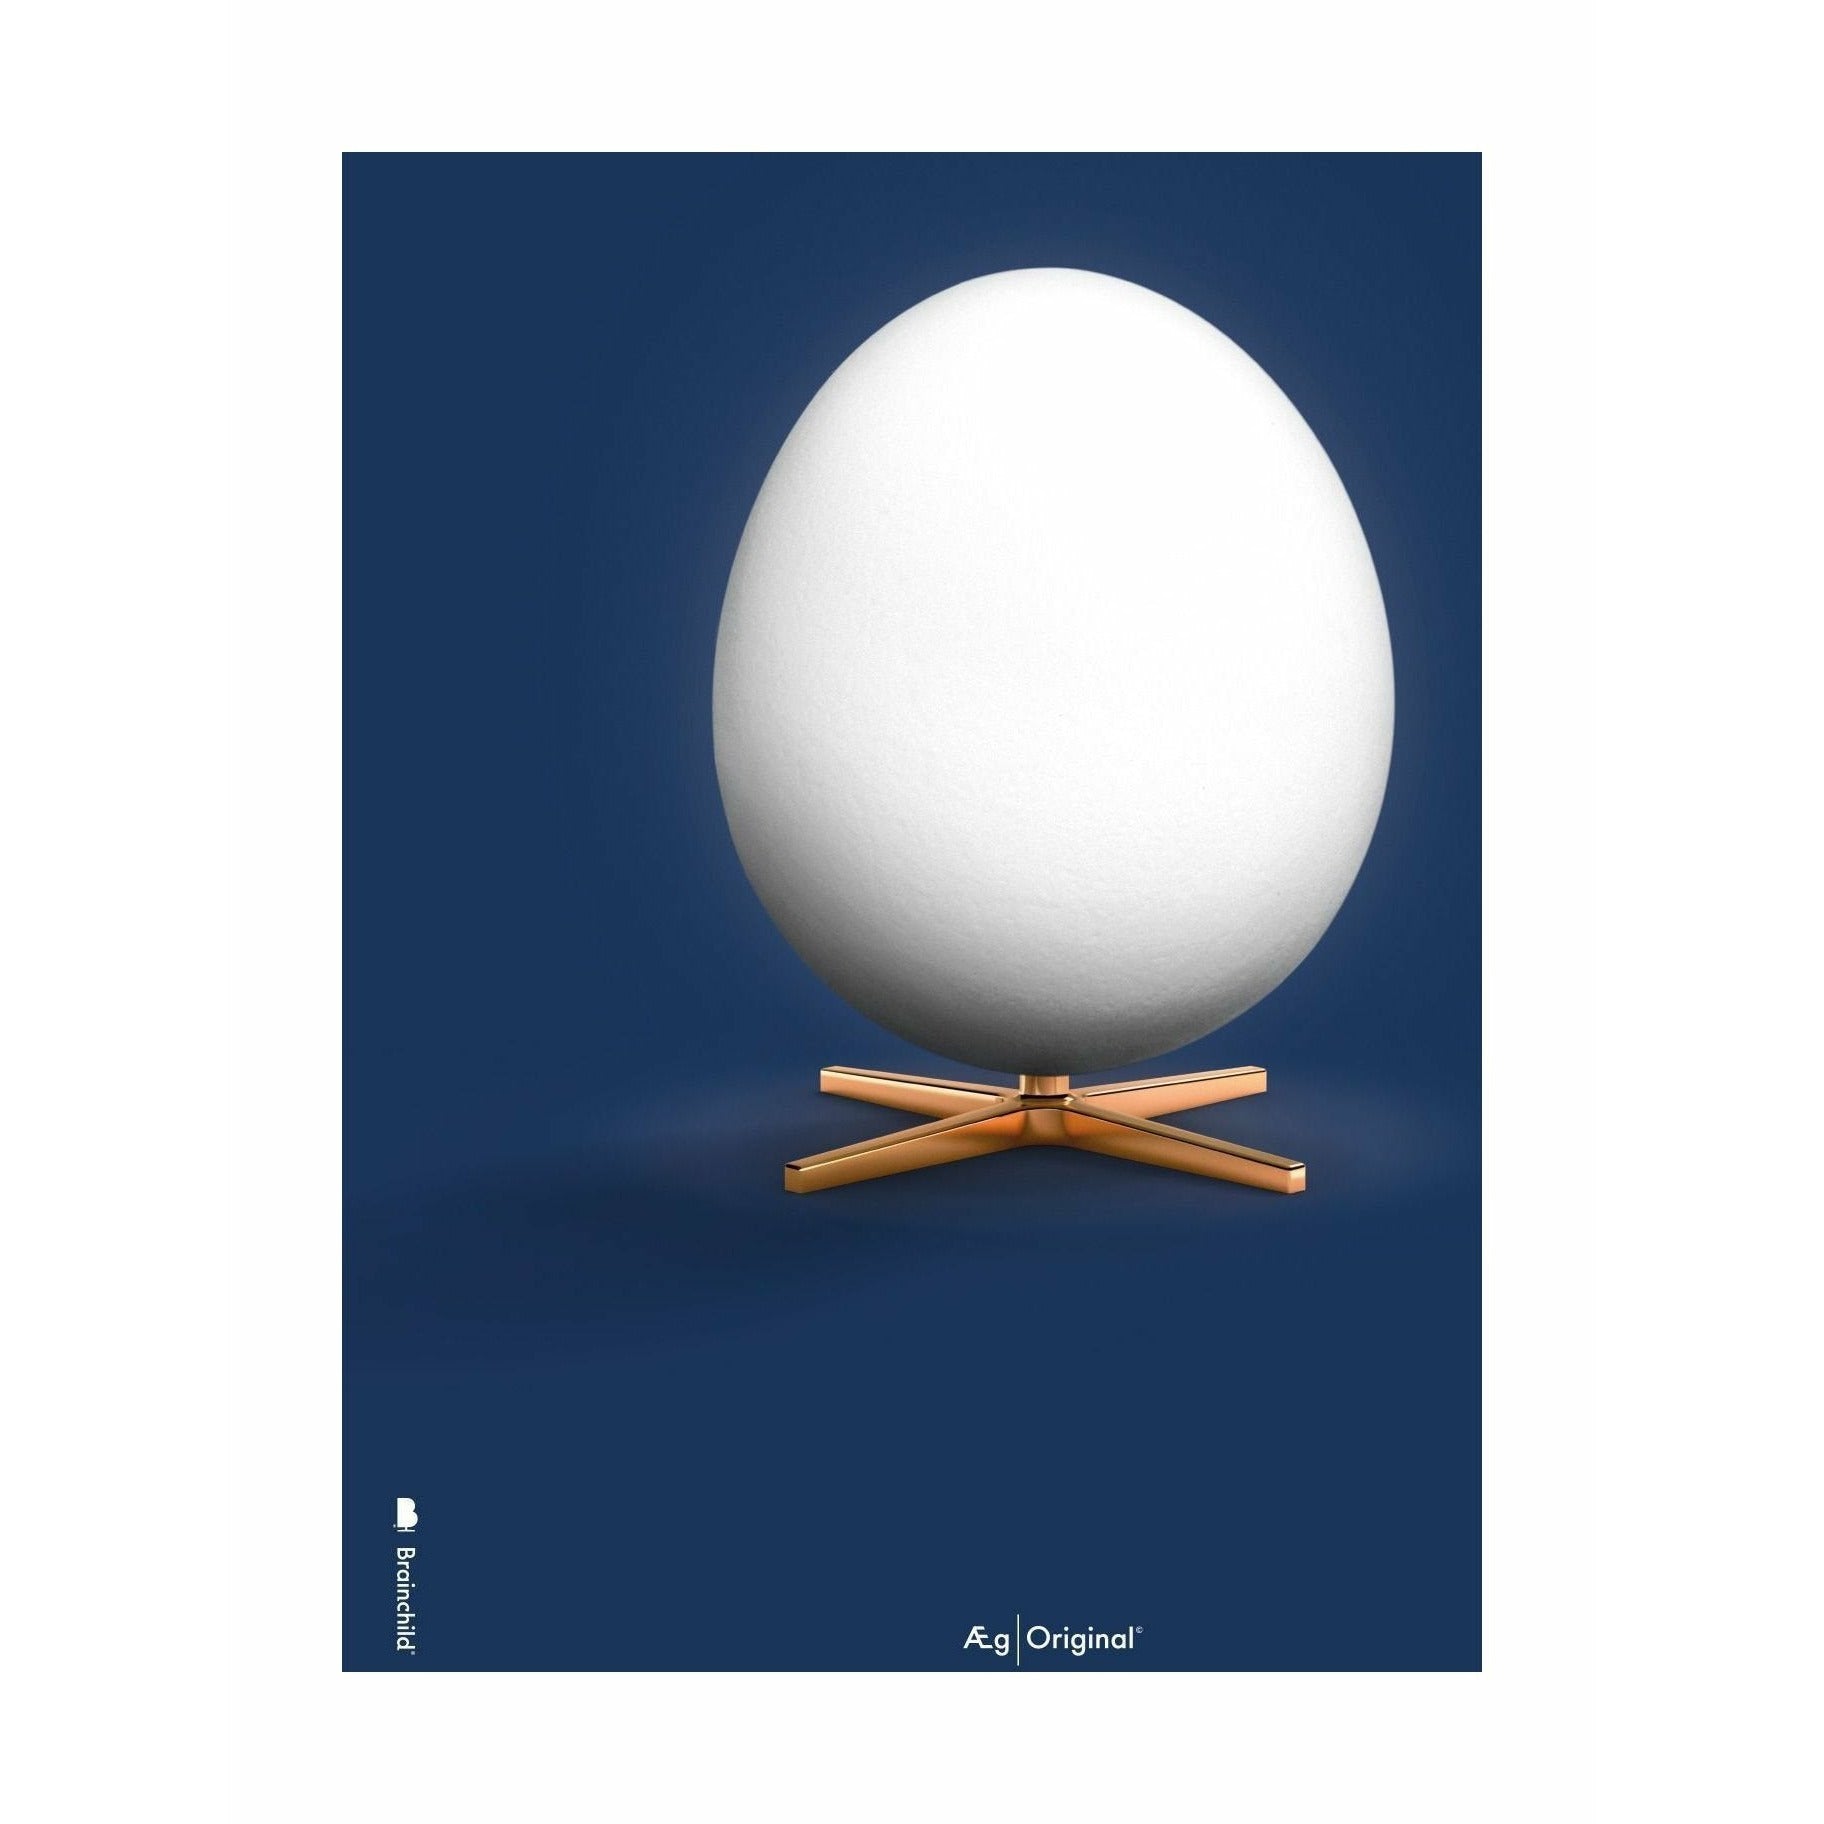 brainchild Egg Classic juliste ilman kehystä 70 x100 cm, tummansininen tausta